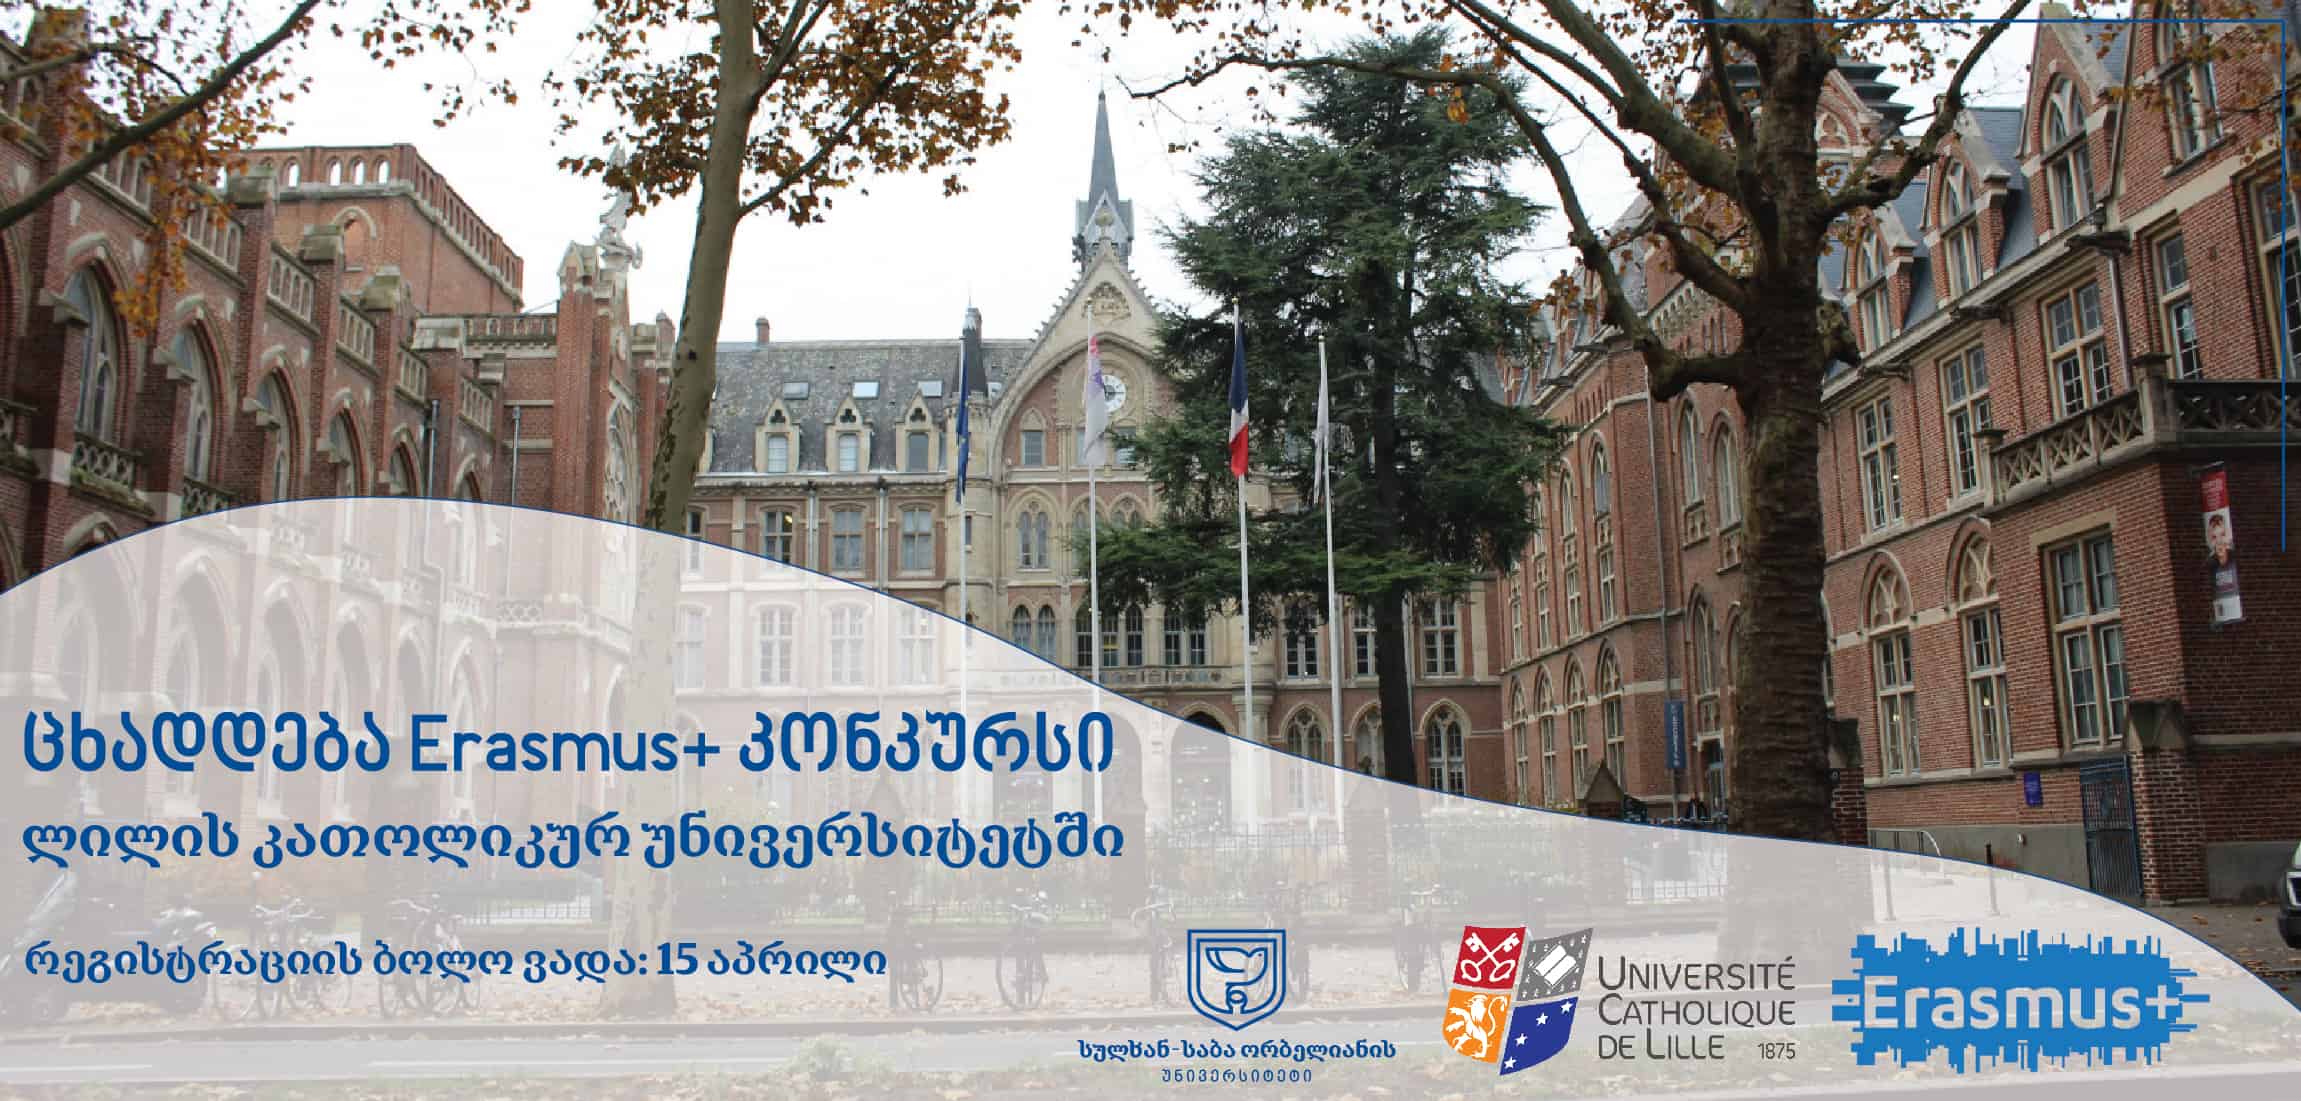 Erasmus+ კონკურსი ლილის კათოლიკურ უნივერსიტეტში